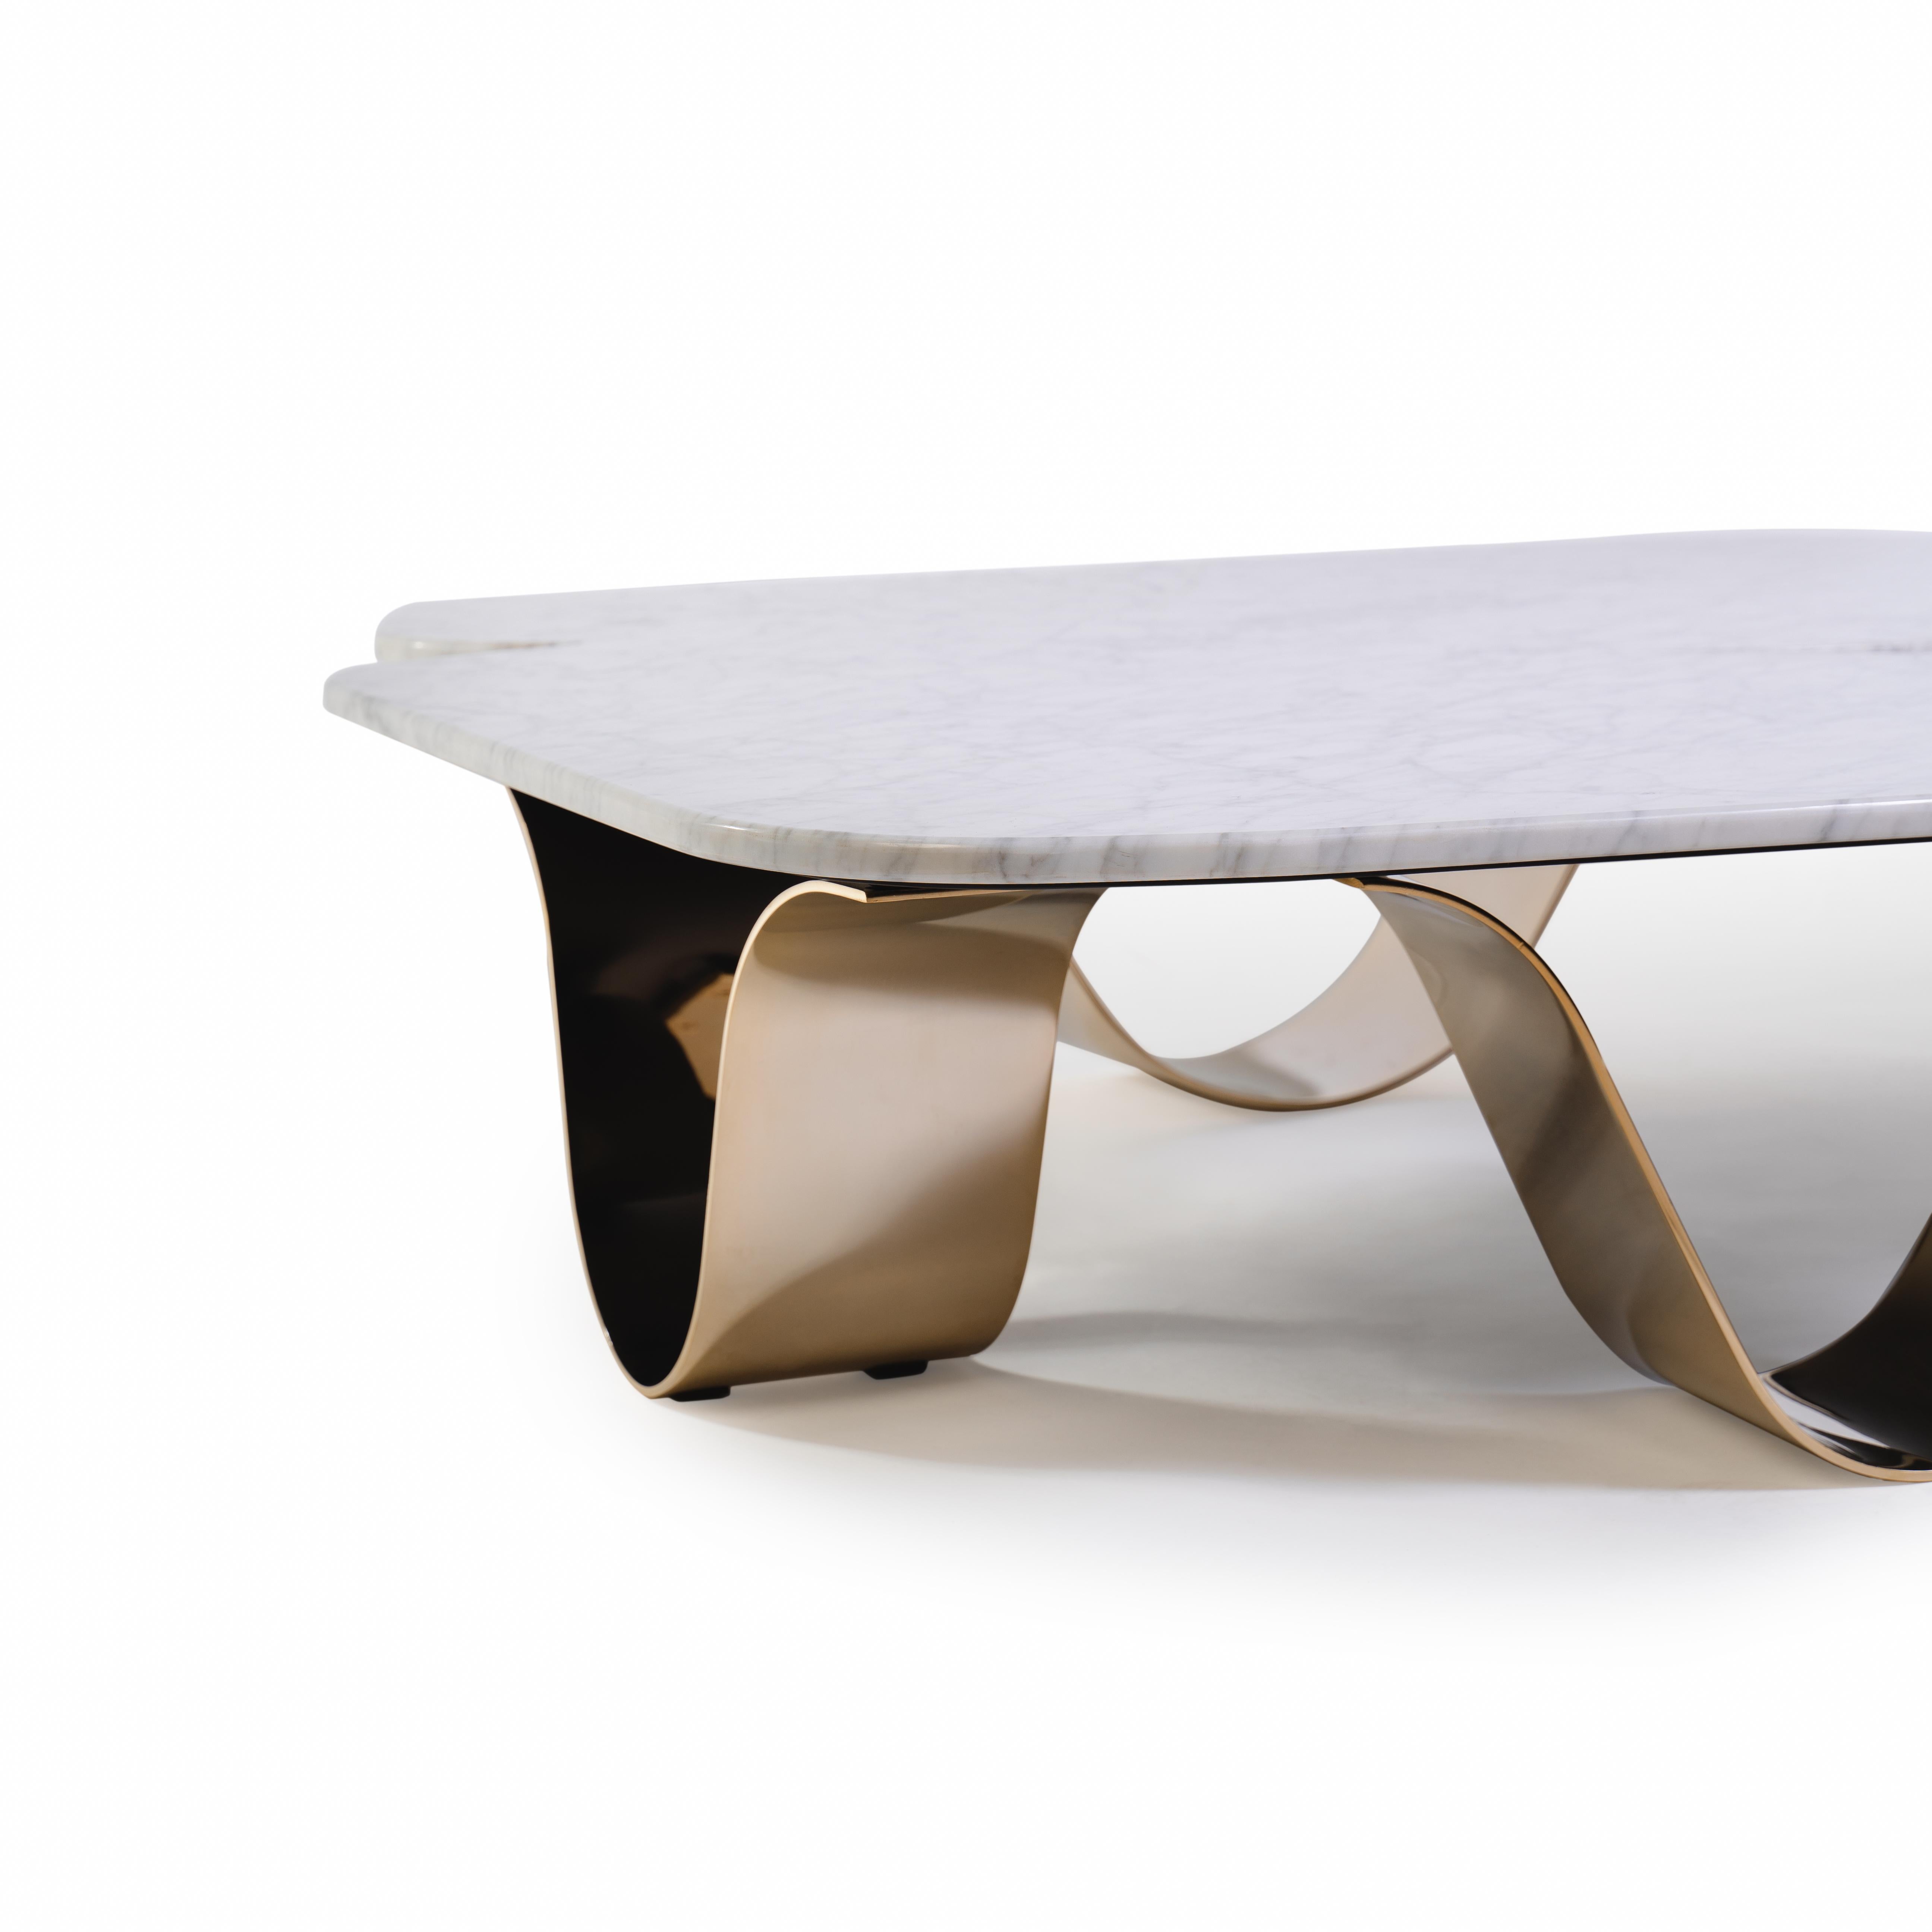 Table centrale Kai 

La table centrale d'extérieur Kai est un véritable chef-d'œuvre en termes de design et de fonctionnalité. Sa silhouette élégante est définie par des vagues qui créent une forme harmonieuse et fluide.
La table est fabriquée avec